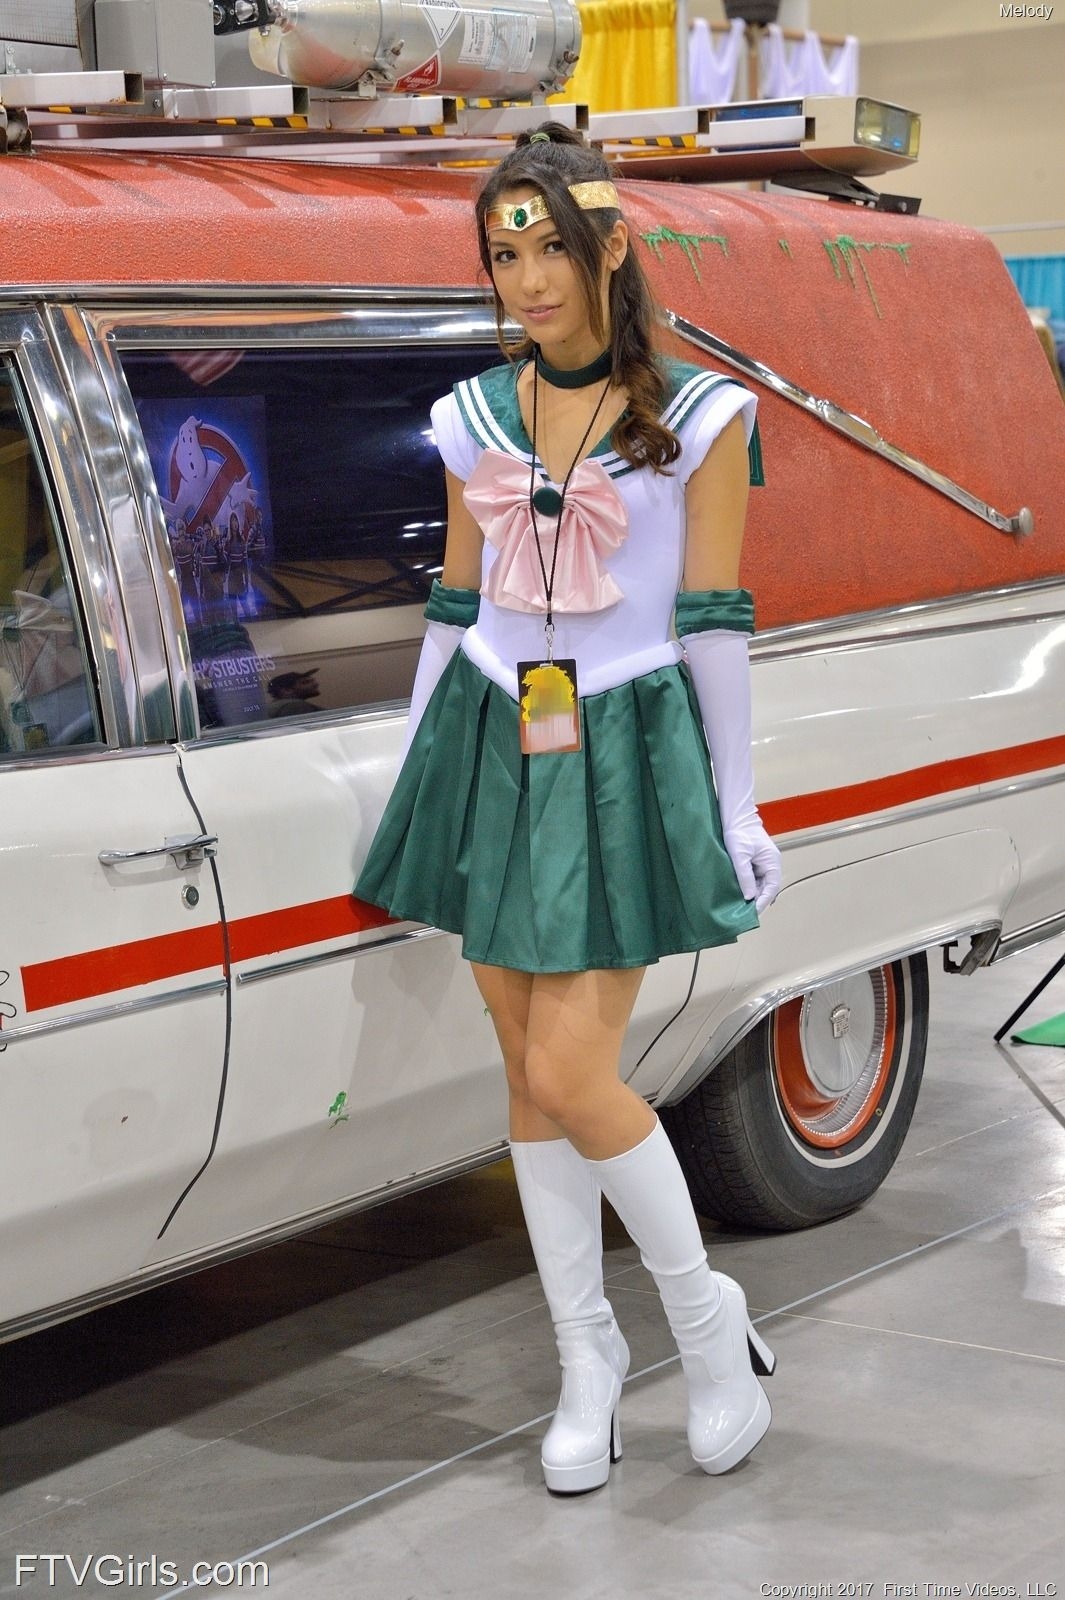 Melody Wylde as Sailor Jupiter 101